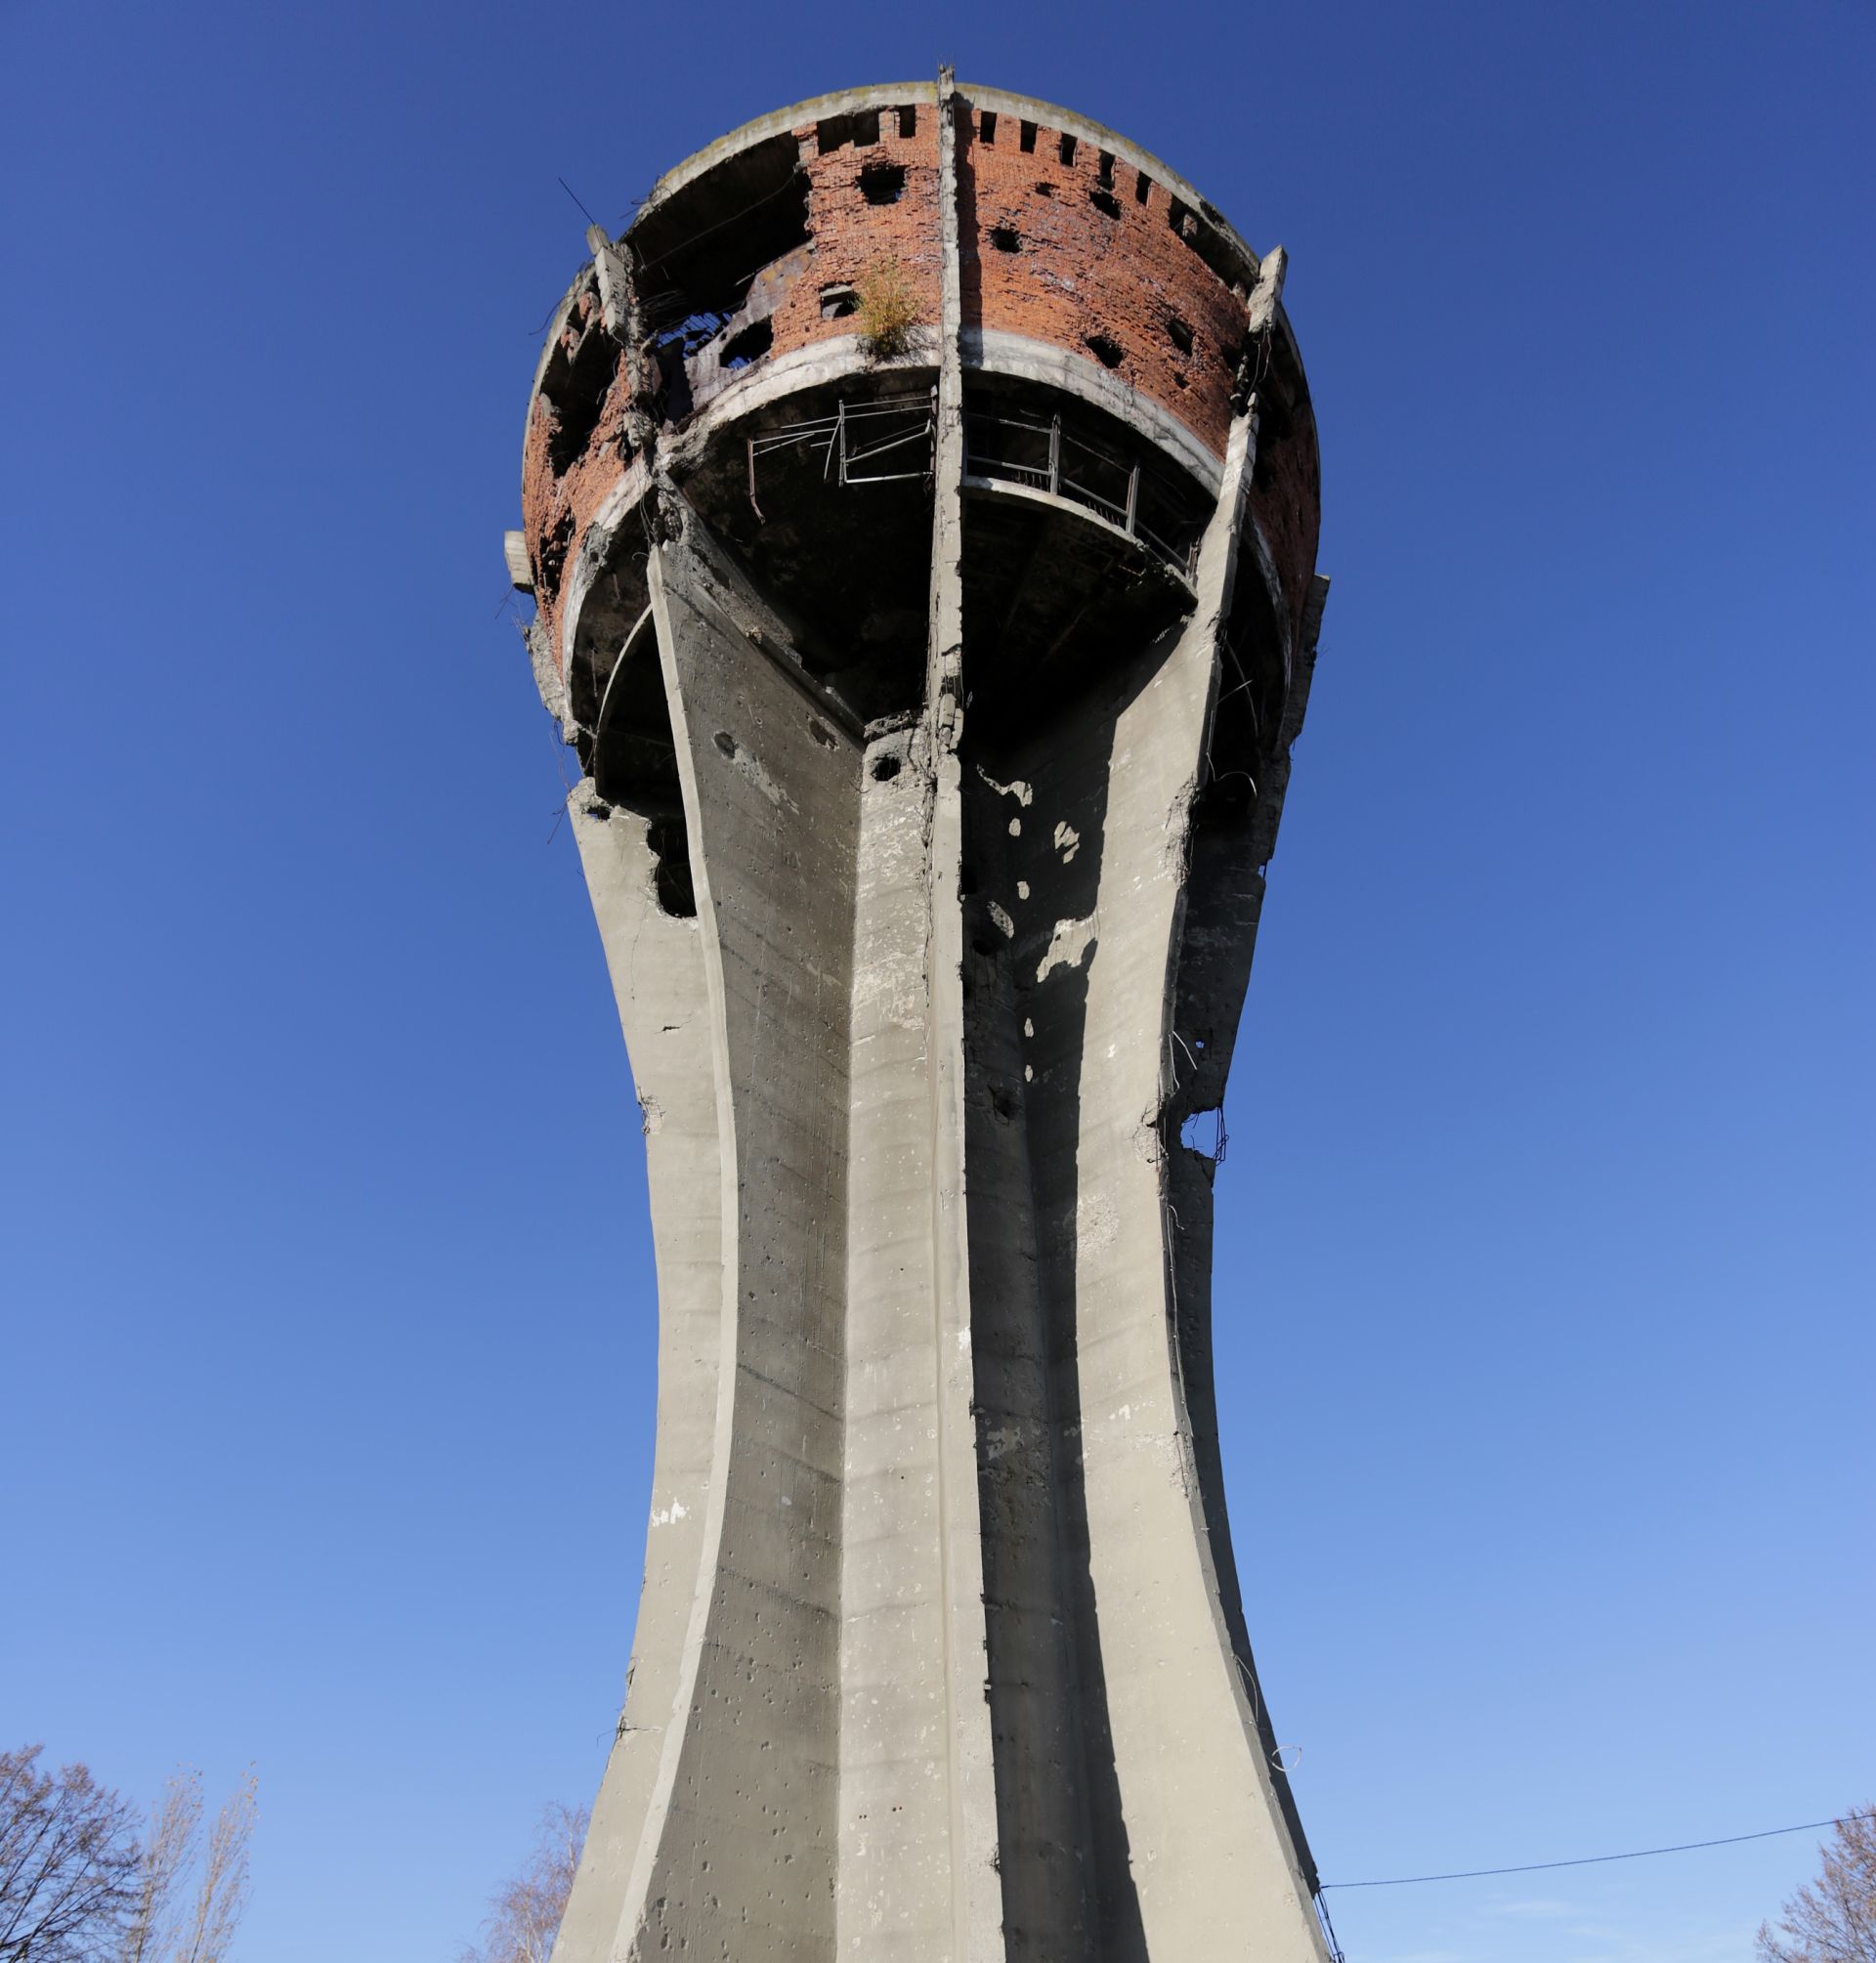 16.11.2015., Vukovar - Vodotoranj, visok 50 m i obujma 2200 prostornih metara vode, izgradjen je potkraj sezdesetih godina u tadasnjem gradskom perivoju i izletistu tzv. "Najpar-basci", na ulazu u vukovarsko naselje Mitnicu. Prema zapremnini i velicini bio je jedan od najvecih objekata tog tipa u Europi. Sve do rata, na vrhu Vodotornja nalazio se restoran s vidikovcem na Vukovar, Dunav i okolno srijemsko vinogorje. Tijekom srpske agresije na Vukovar, Vodotoranj bio je jedna od najcescih meta neprijateljskog topnistva koje mu je nanjelo vise od sest stotina ostecenja, a danas predstavlja simbol pobjede i novog zivota. Objekt se nece obnavljati u izvornu funkciju nego ce postati Memorijalno podrucje koje ce podsjecati na patnje i boli koje je Vukovar prozivio. Photo: Grgur Zucko/PIXSELL